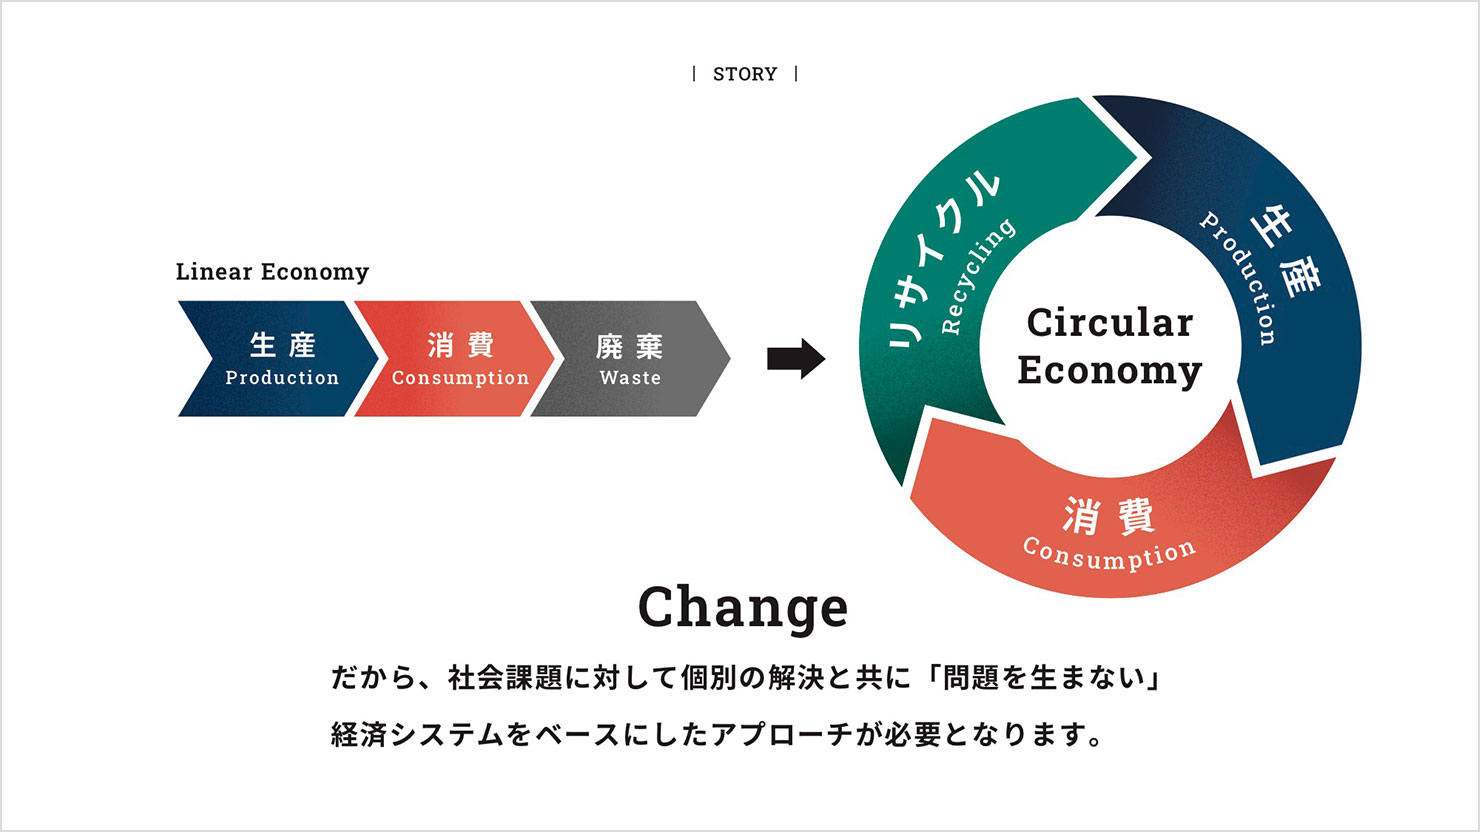 スライド：経済システムをリニアエコノミーからサーキュラーエコノミーに変化させる必要があることを説明している。リニアエコノミーは「生産・消費・廃棄」が連なって一方向に向かう矢印だが、サーキュラーエコノミーは矢印を円環にすることで循環が続く様子を表現。